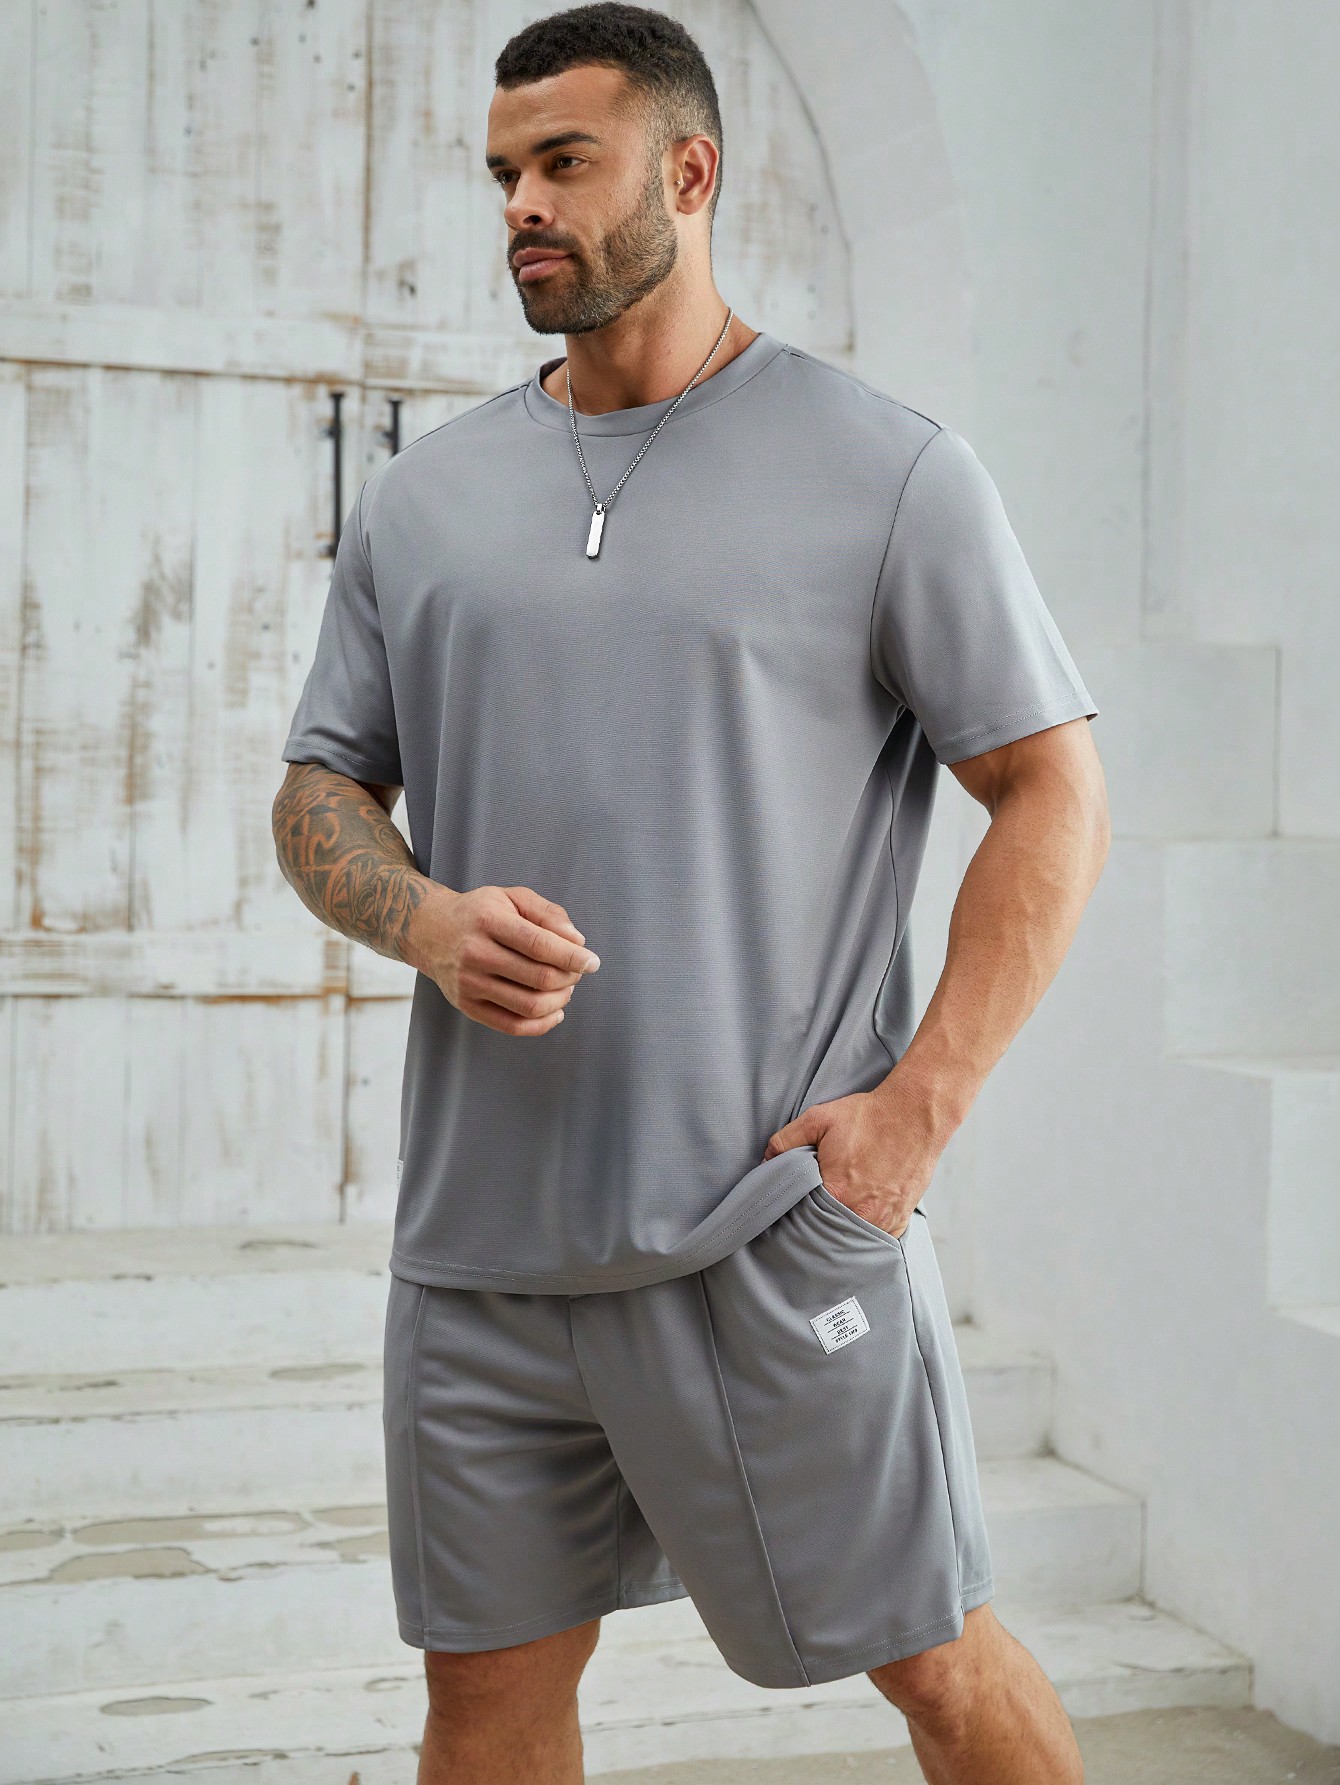 Мужская повседневная трикотажная футболка с короткими рукавами и прямые шорты Manfinity Homme, серый кофта вязаная с коротким рукавом 42 44 размер